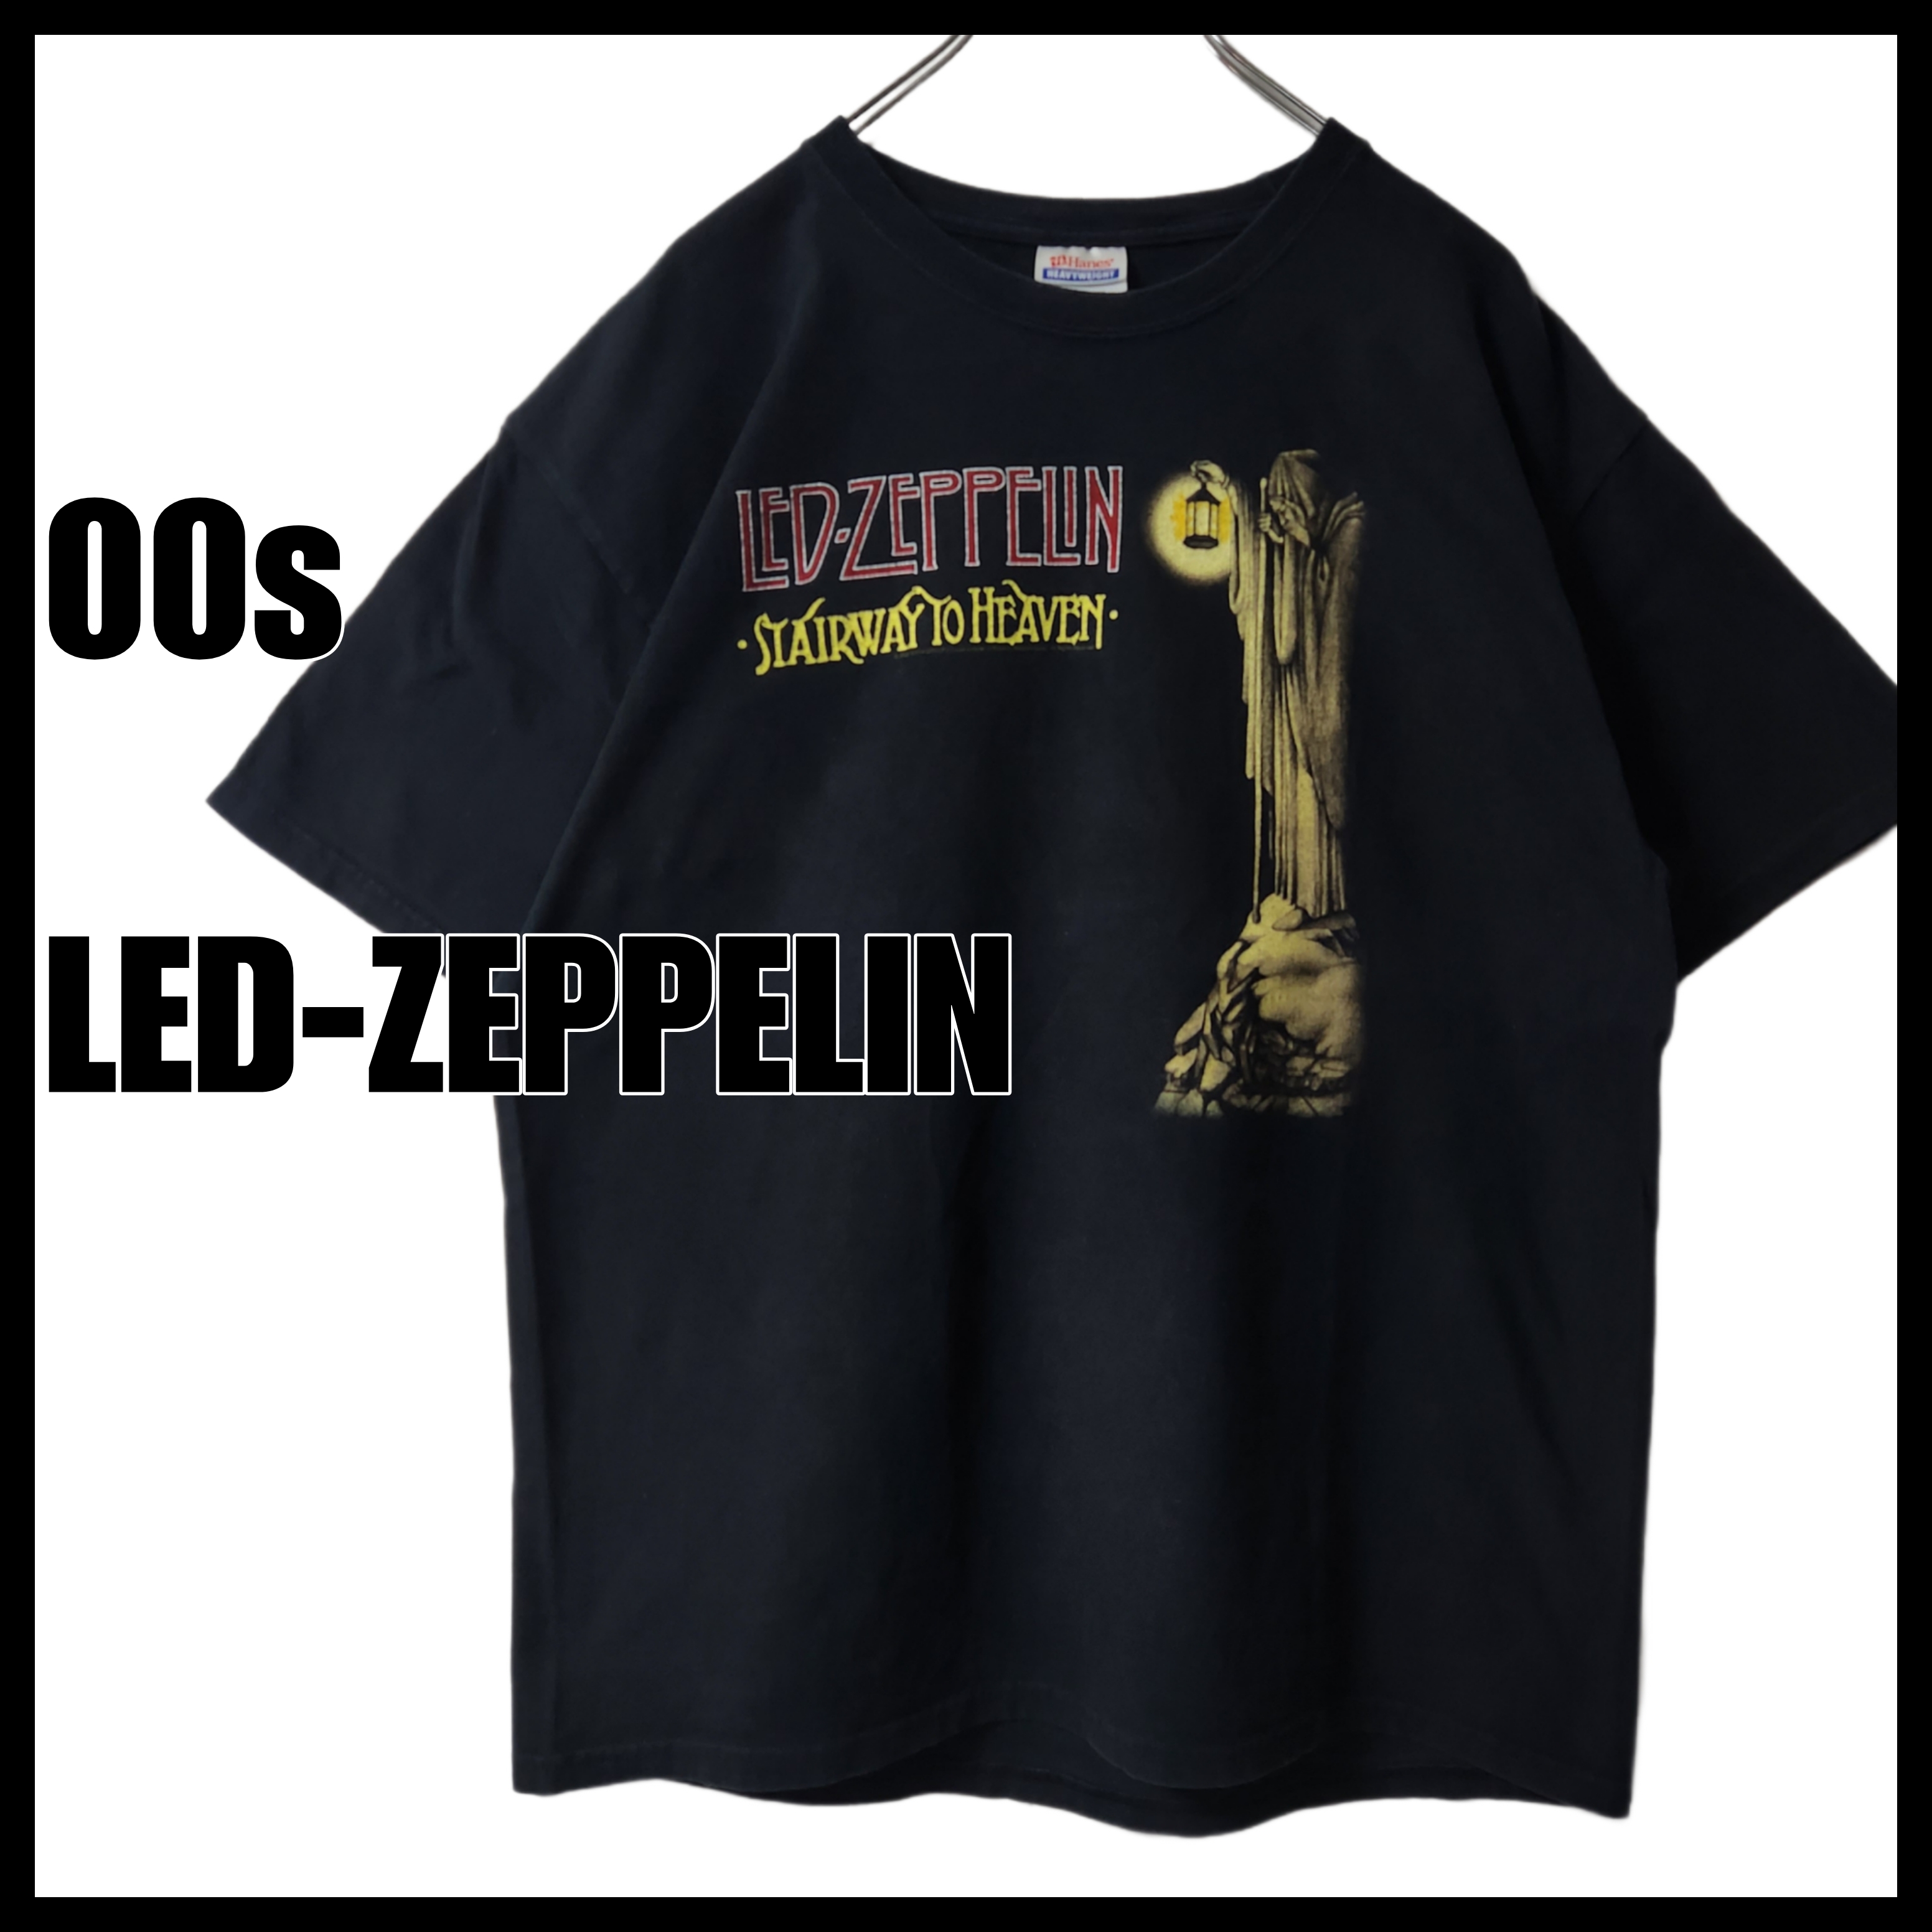 ネッククルーネックLed Zeppelin Tシャツ 両面プリント 00s